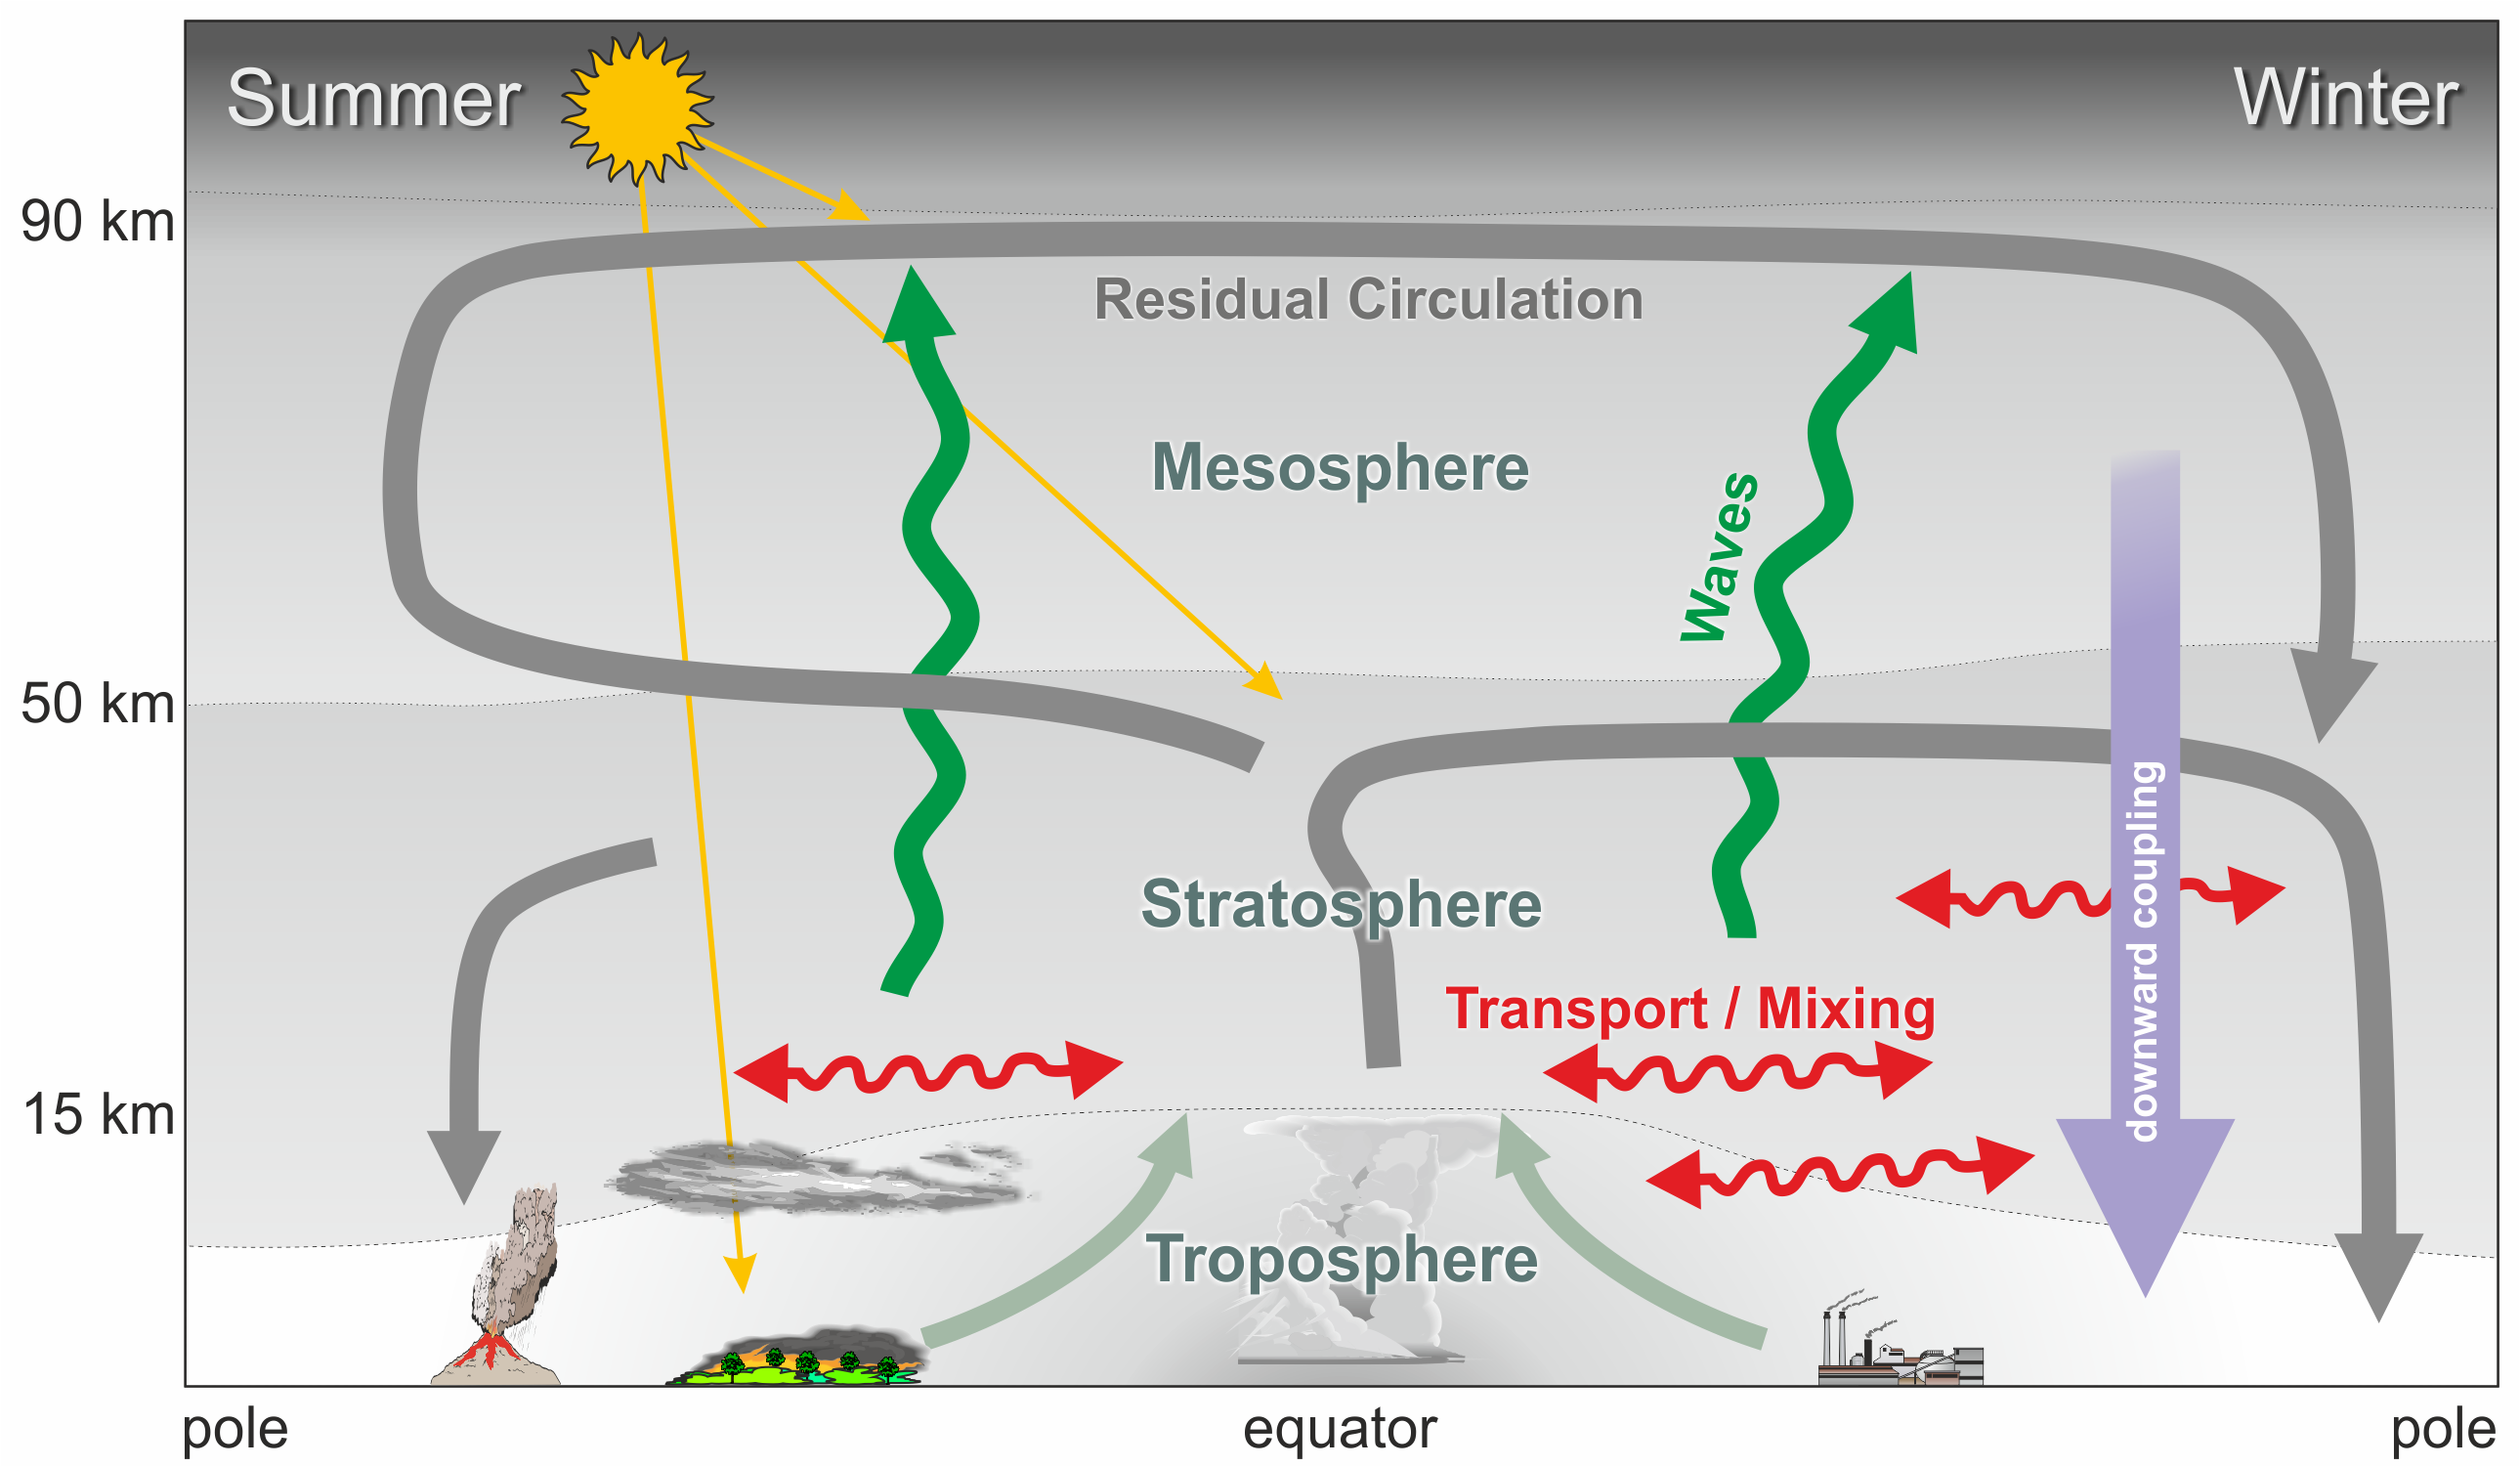 Einfluss der Wellendynamik auf Zirkulation der mittleren Atmosphäre (10 bis 100km) mit Relevanz für das regionale Klima und Wetter am Boden (schematisch)